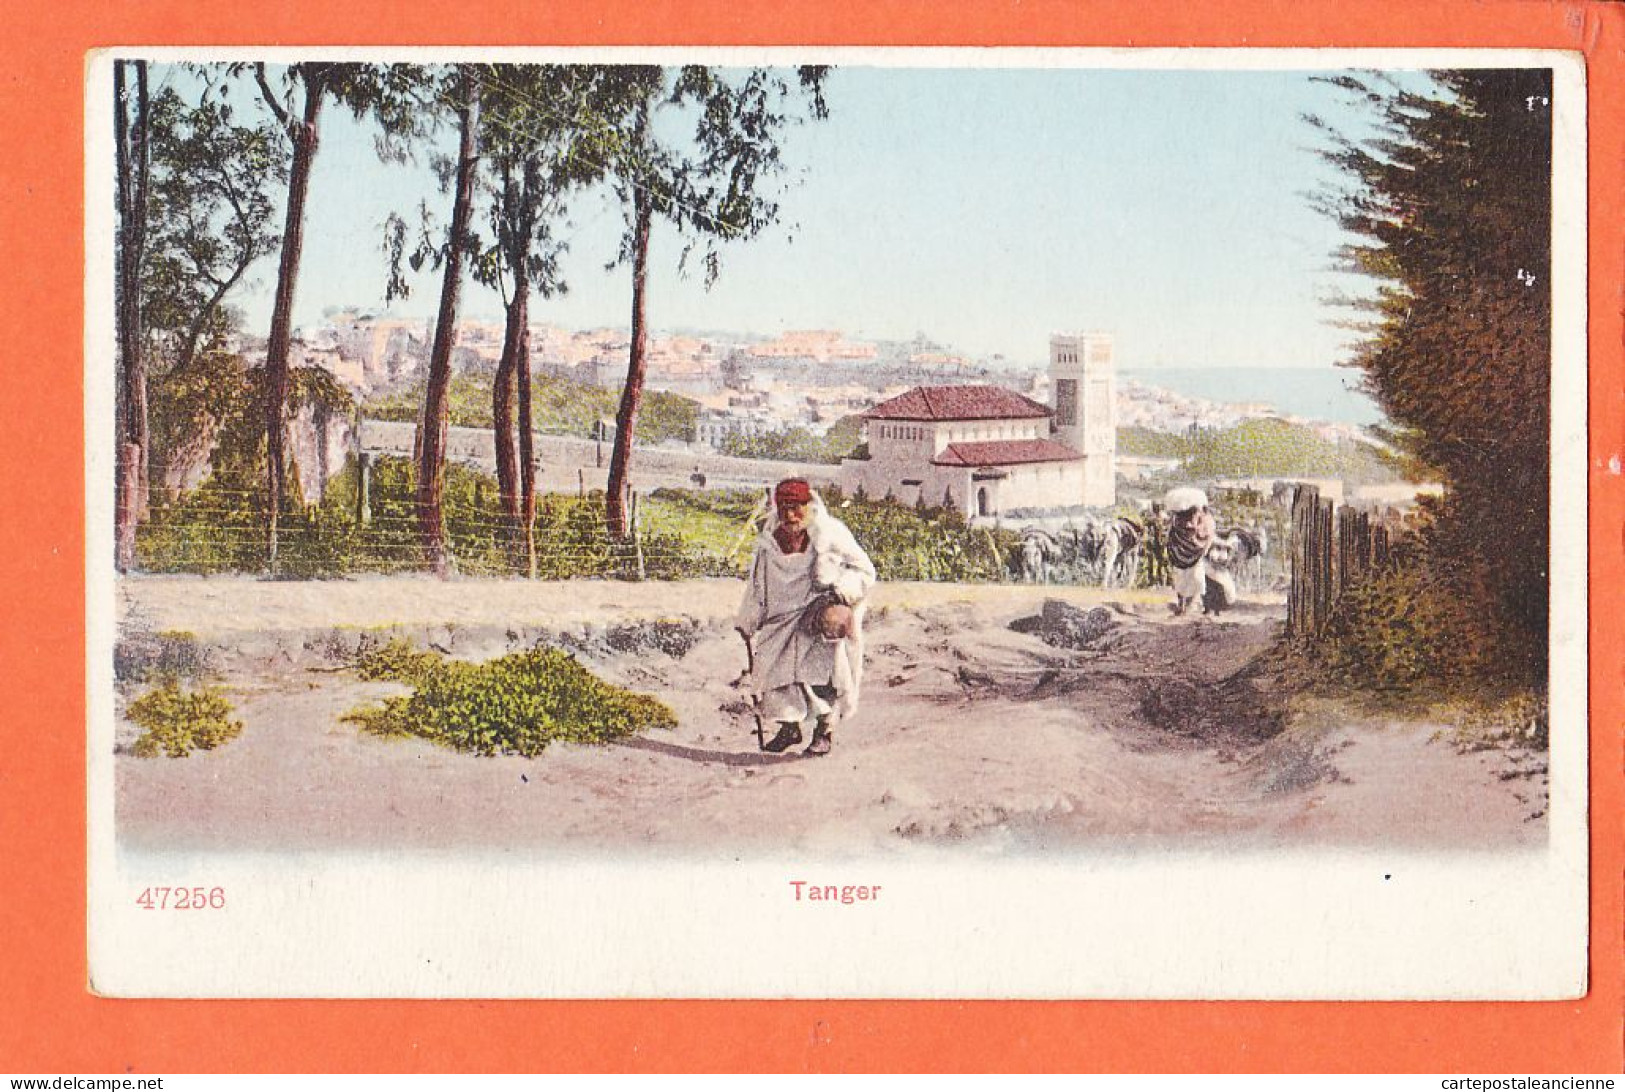 08126 ● TANGER Maroc 1900s CPA N° 47256 - Tanger